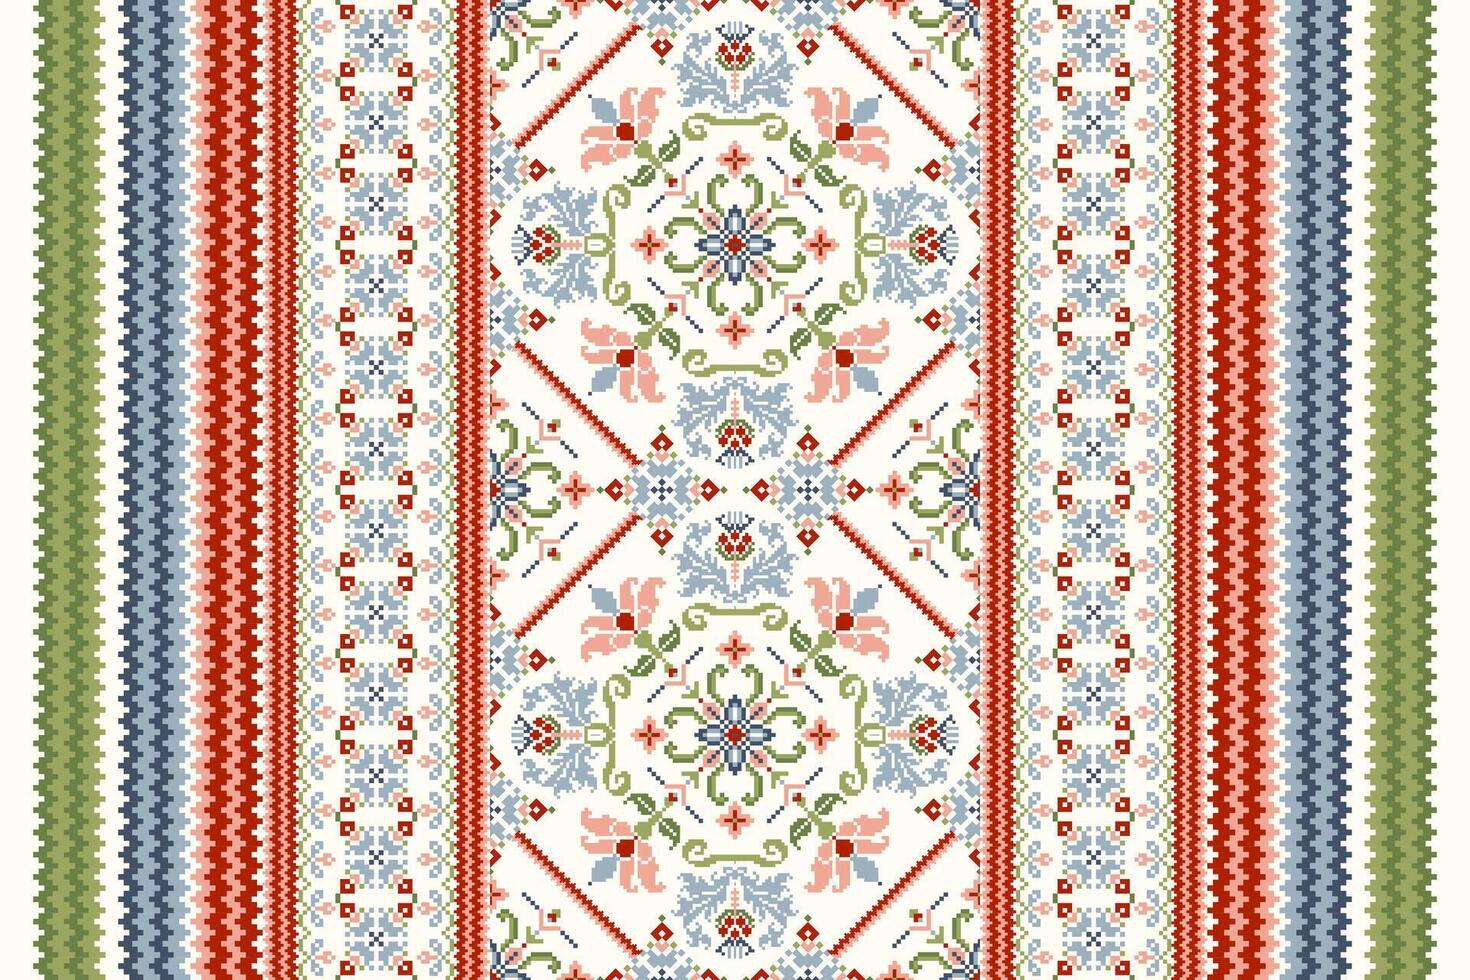 meetkundig etnisch oosters patroon vector illustratie.bloemig pixel kunst borduurwerk Aan wit achtergrond, azteeks stijl, samenvatting achtergrond.ontwerp voor textuur,stof,kleding,verpakking,decoratie,sjaal,print